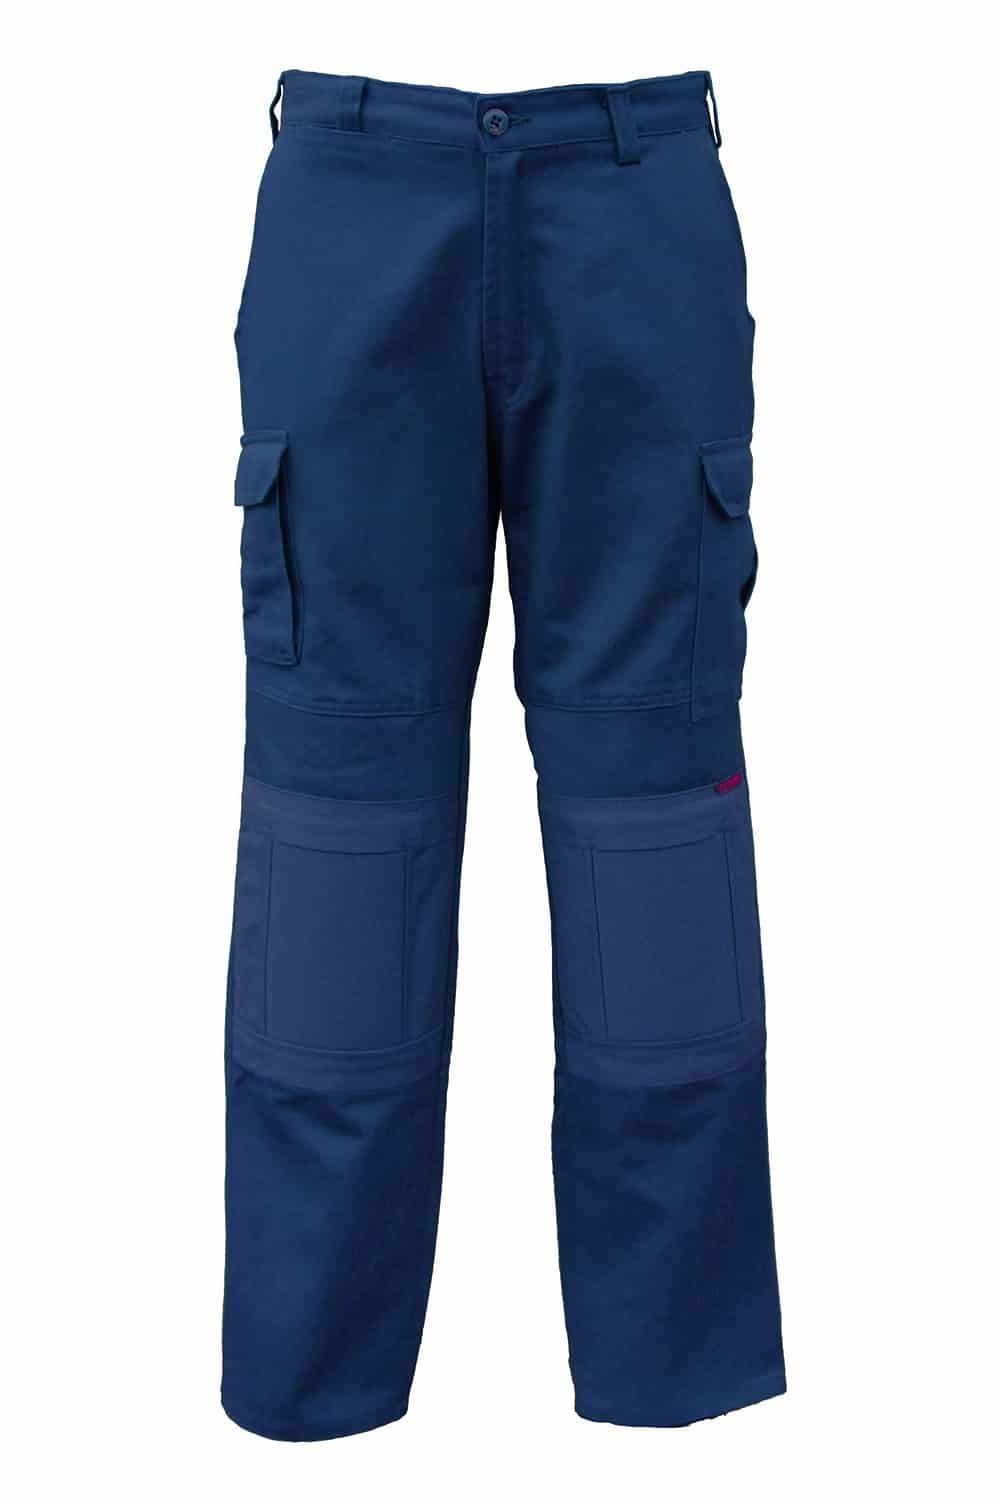 Eez Neez Pants with Built In Knee Pad